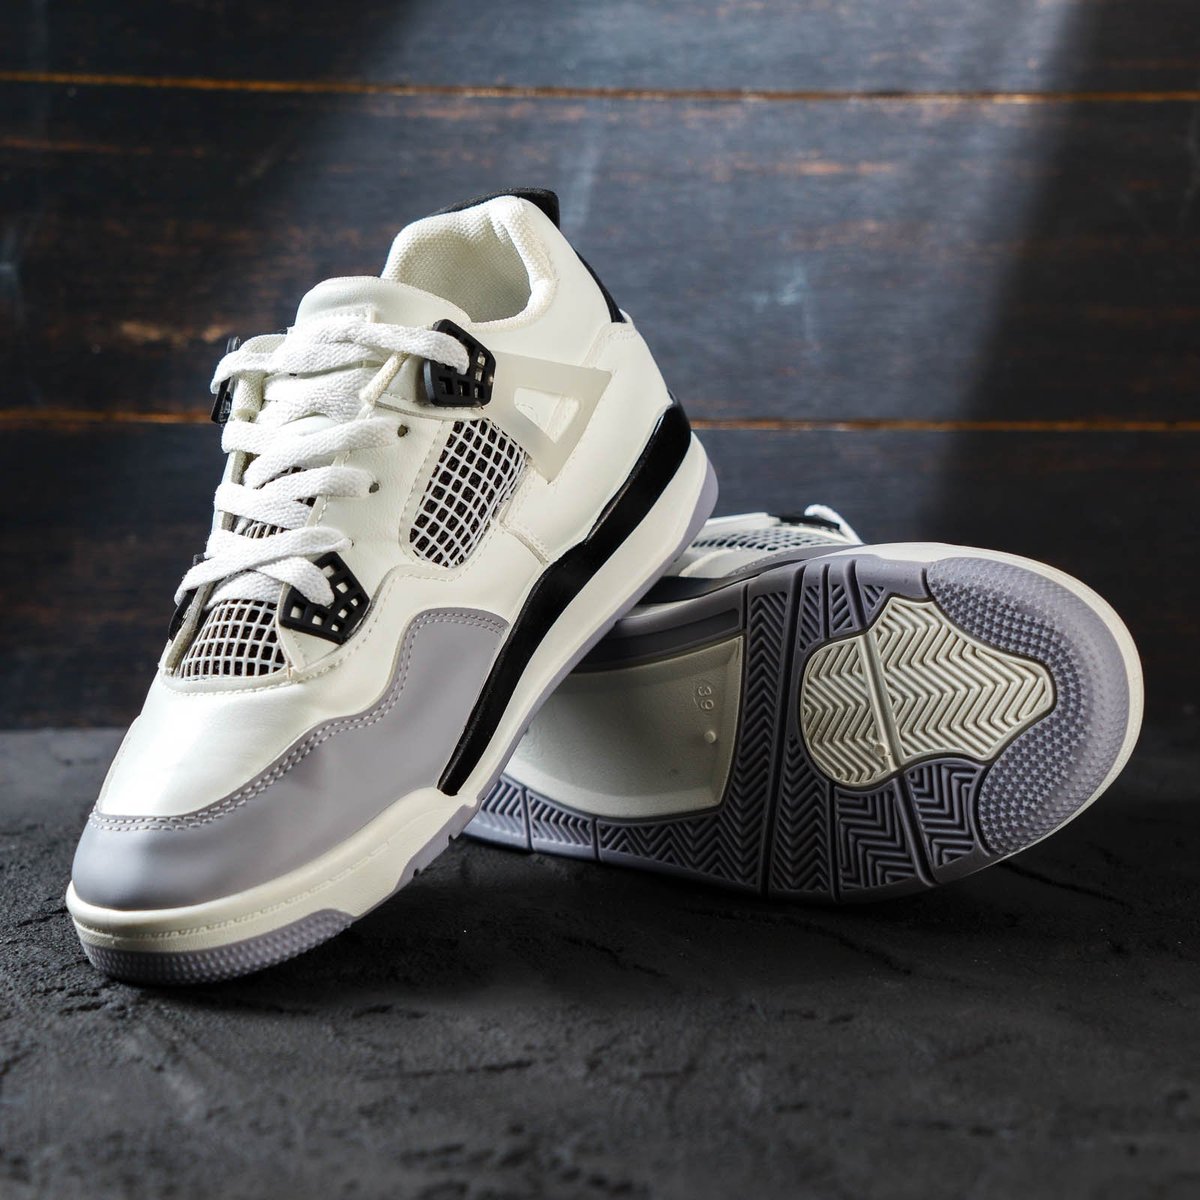 Nama Produk:  PAULMAY - Sepatu Sneakers Pria Wanita Vegas White Grey
Harga Produk:  Rp799.000
Harga Diskon:  Rp149.000 

s.lazada.co.id/s.JfCi3
s.lazada.co.id/s.JfCi3